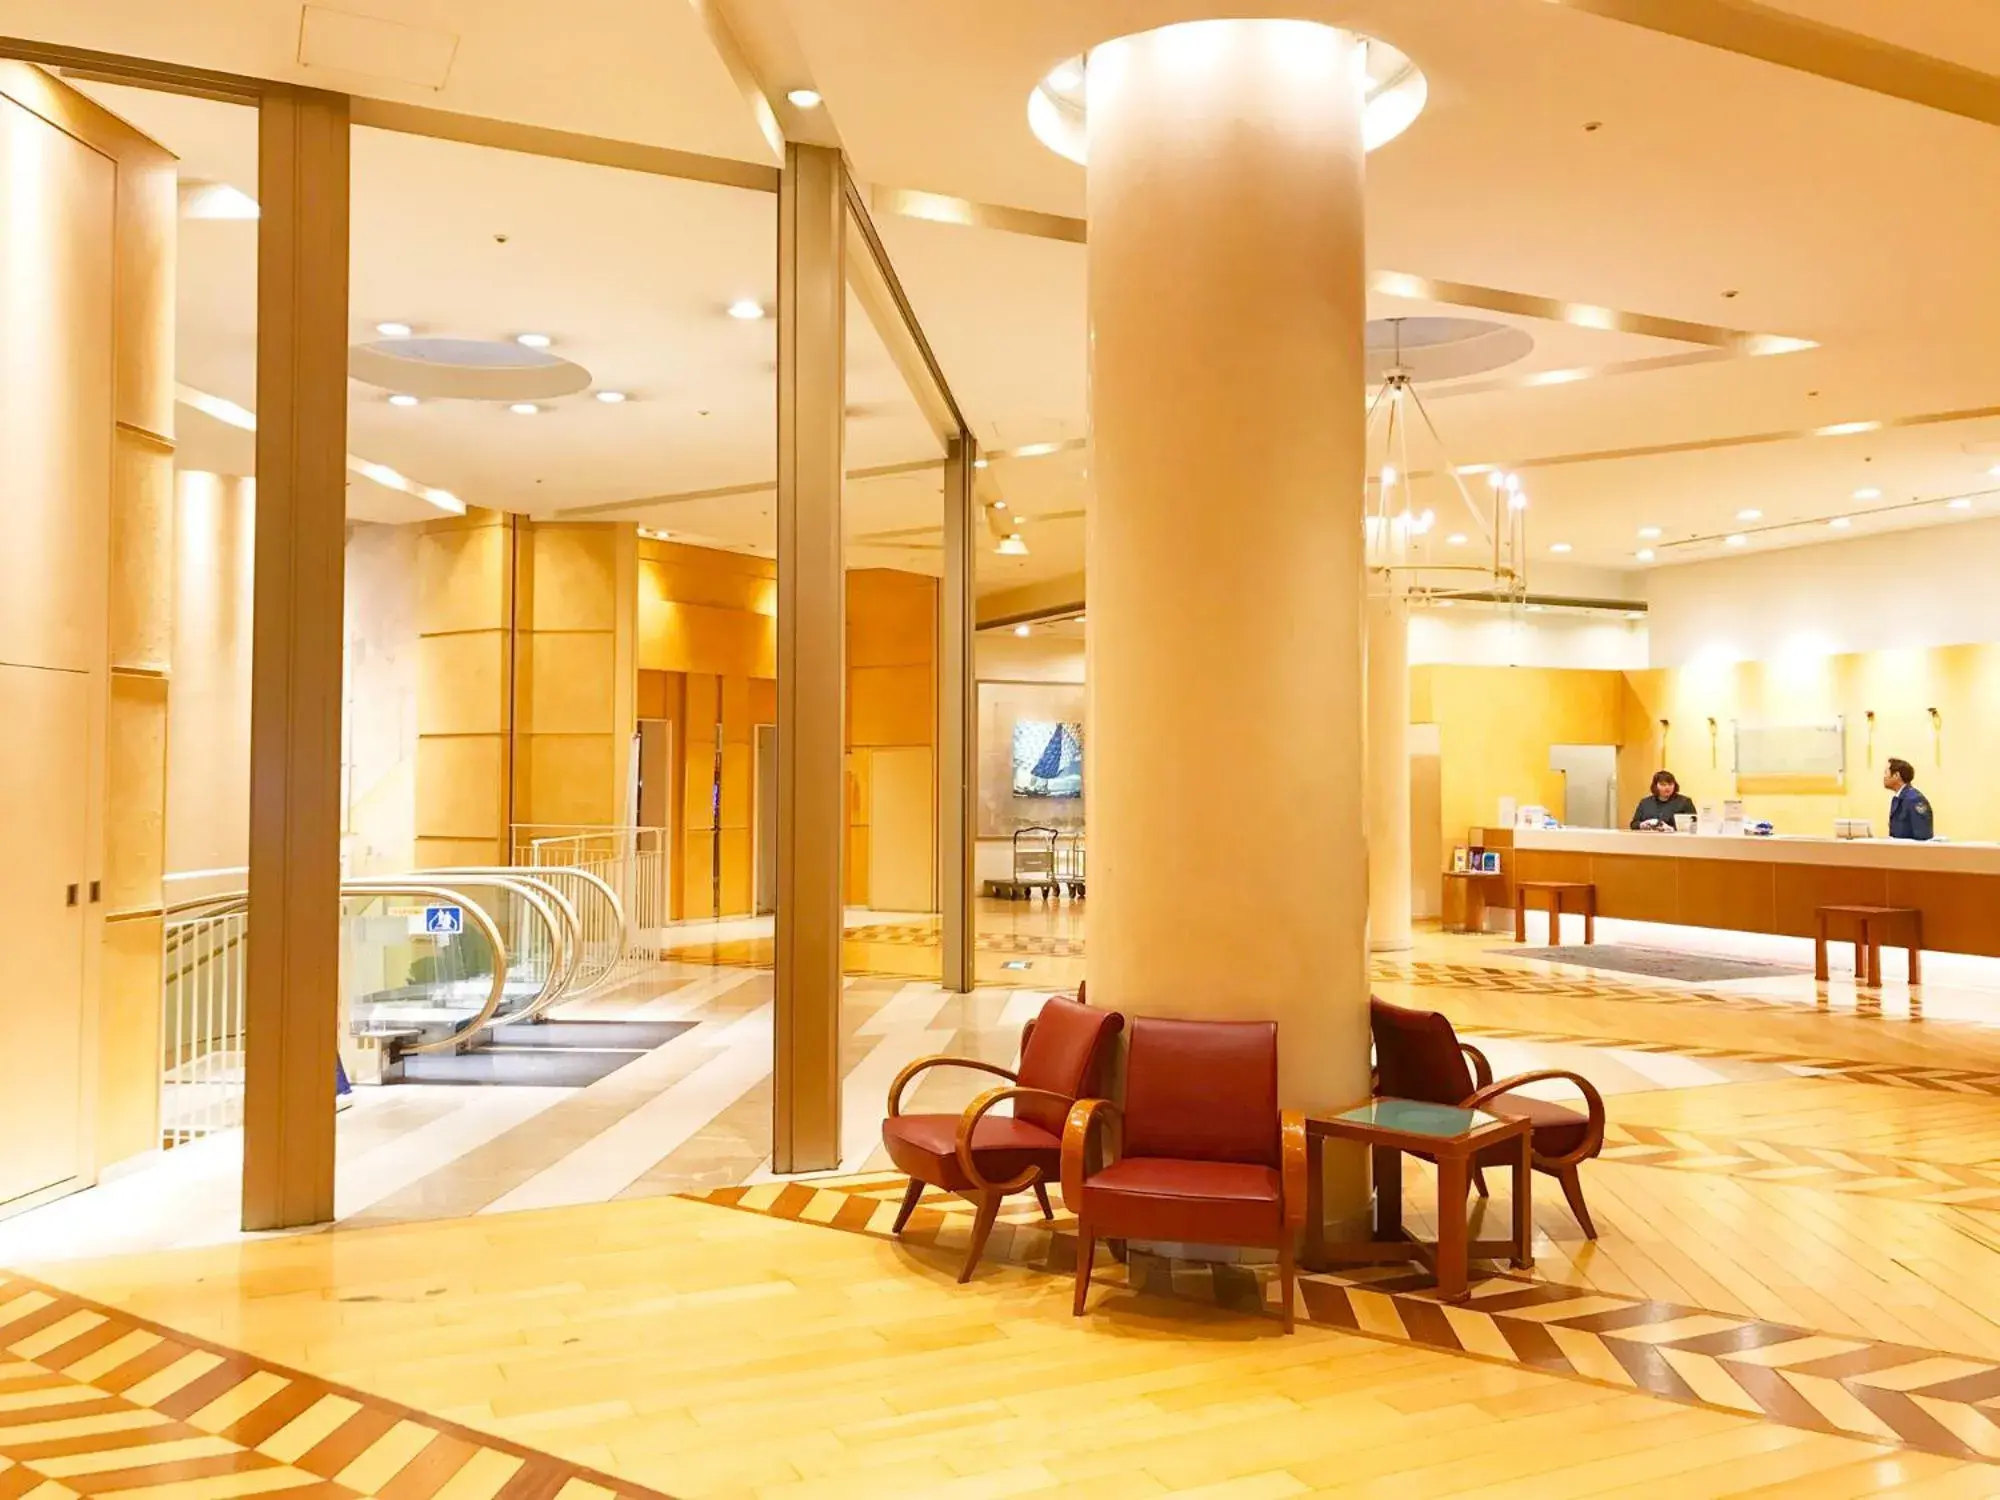 Lobby or reception, Lobby/Reception in Hotel Seagull Tempozan Osaka